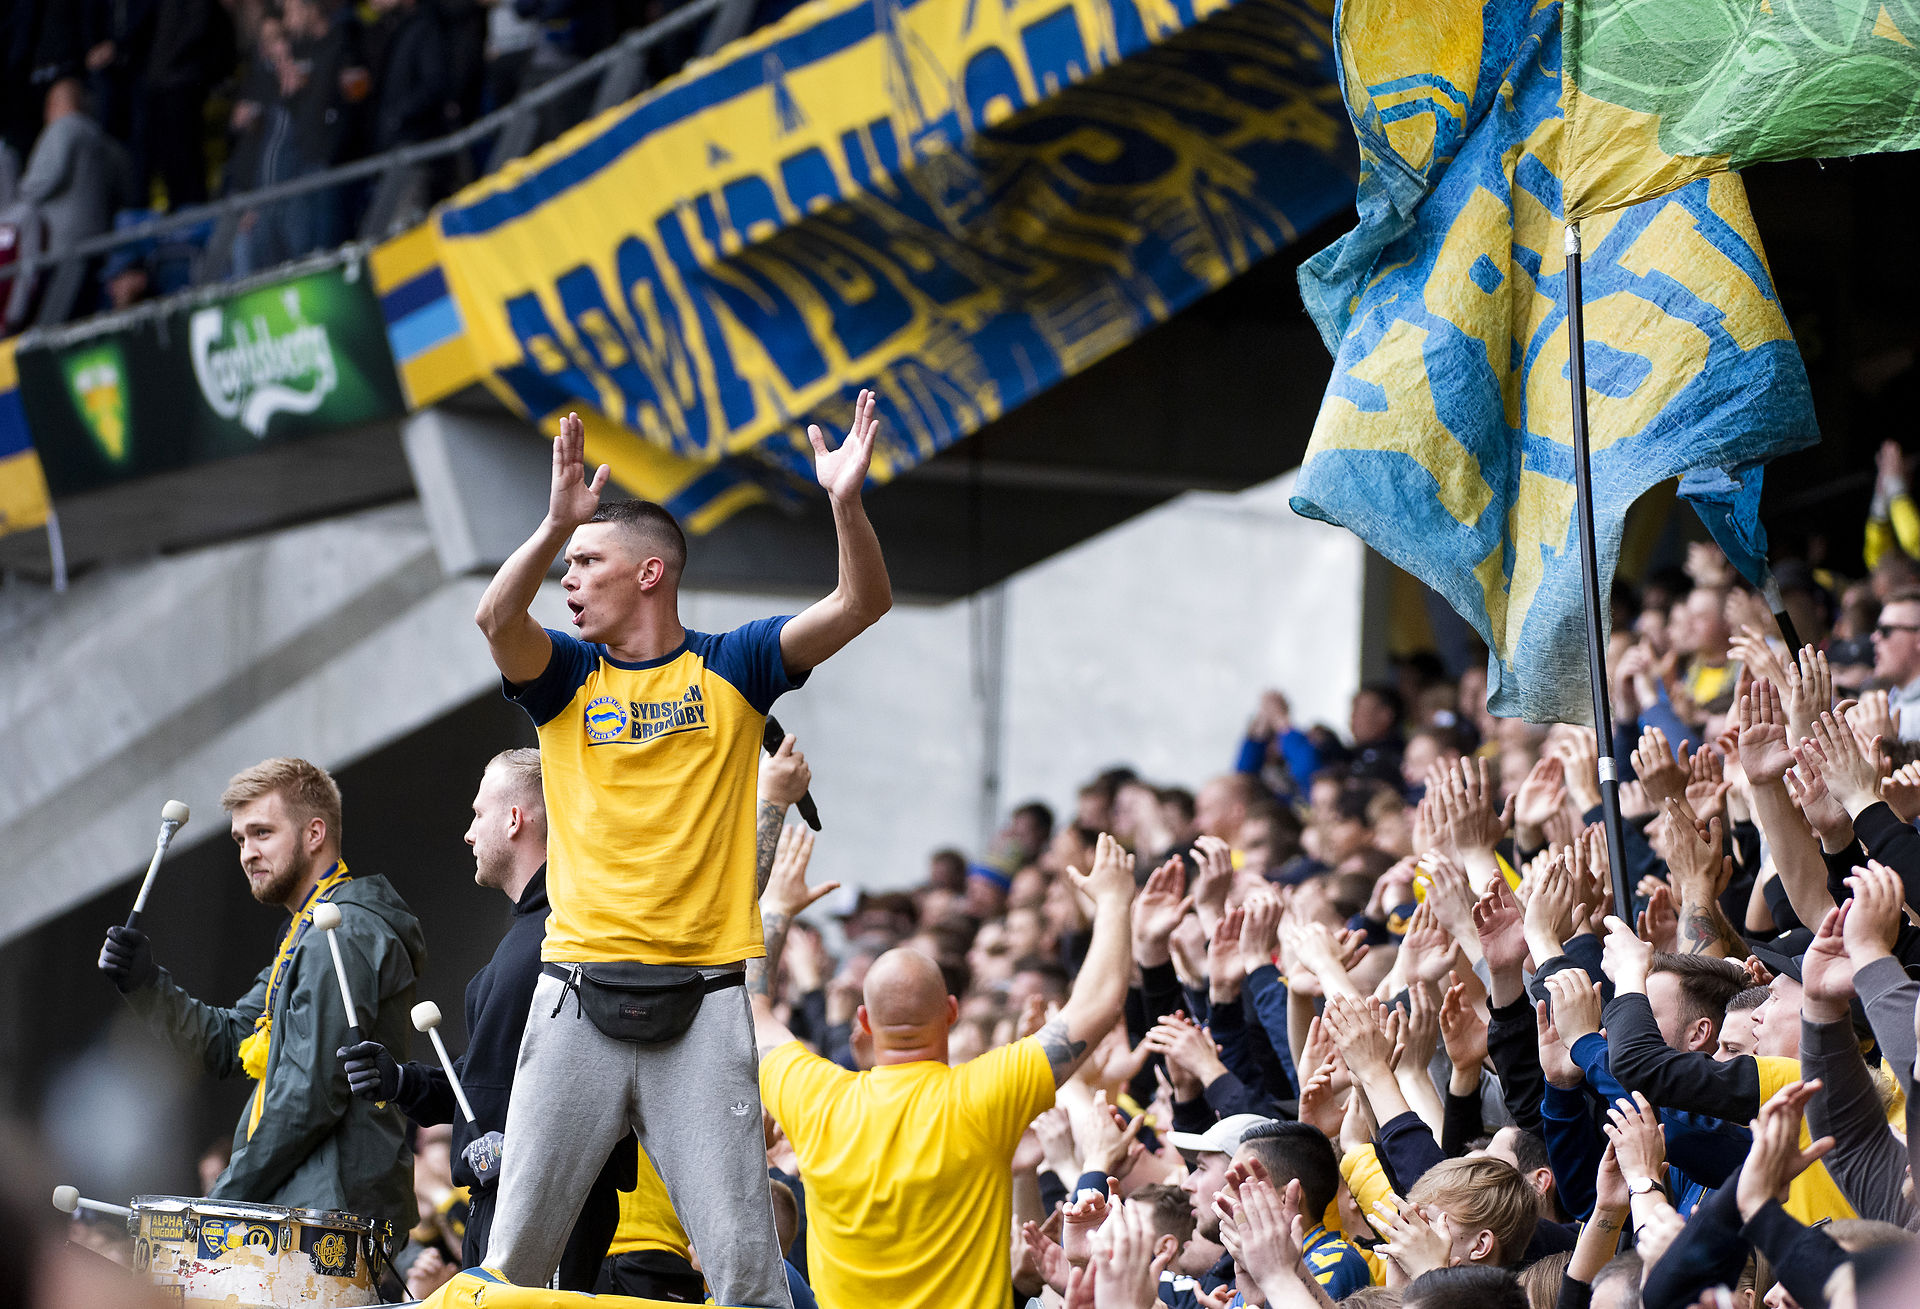 De bedste i Danmark: Brøndbys fans viser KÆMPE overskud før finalen